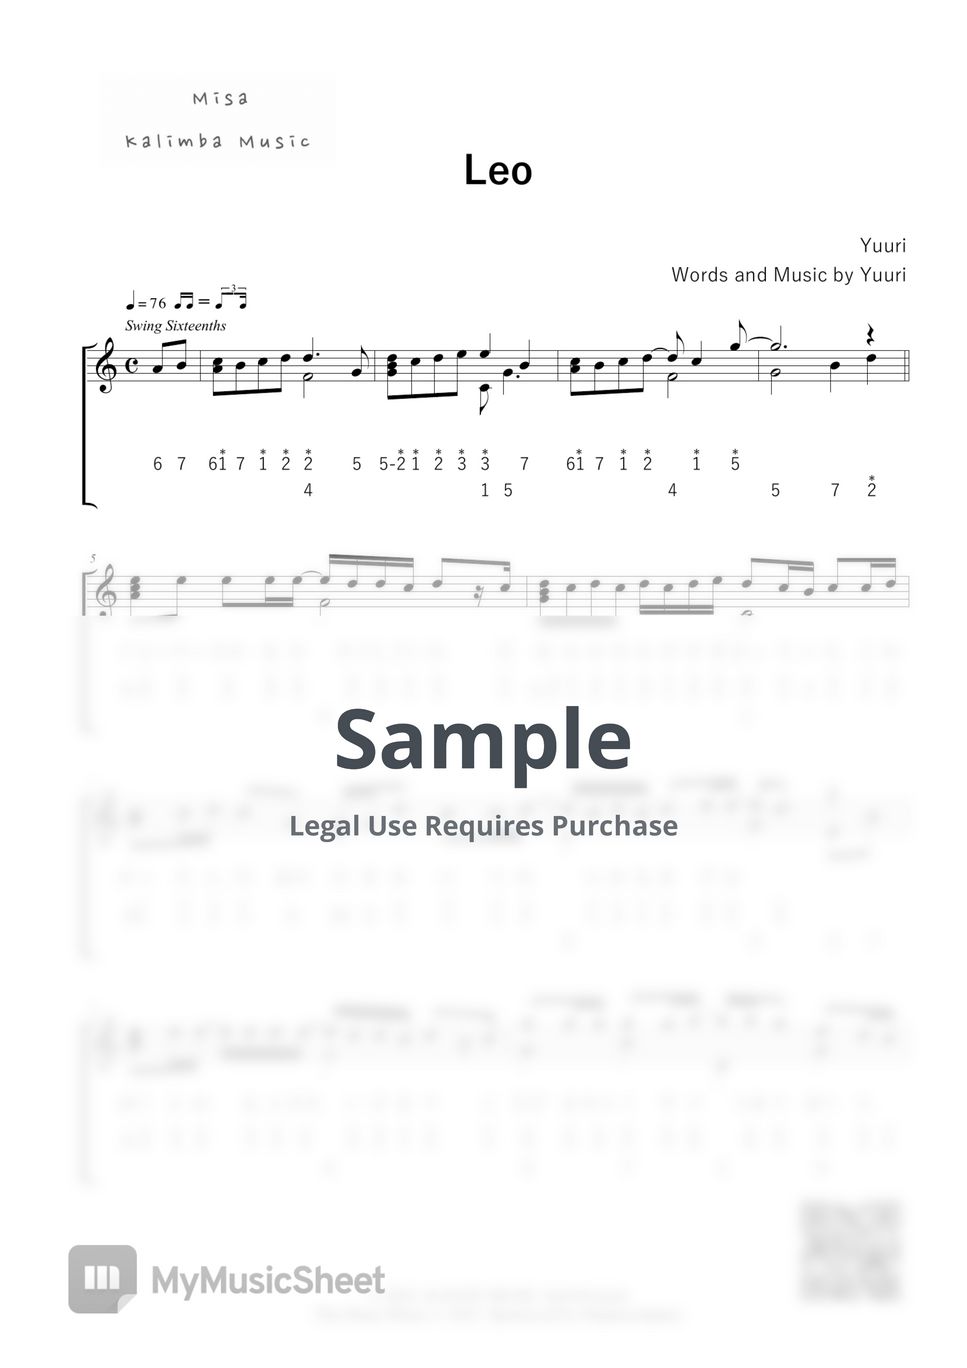 Yuuri - Leo / Number Notation by Misa / Kalimba Music